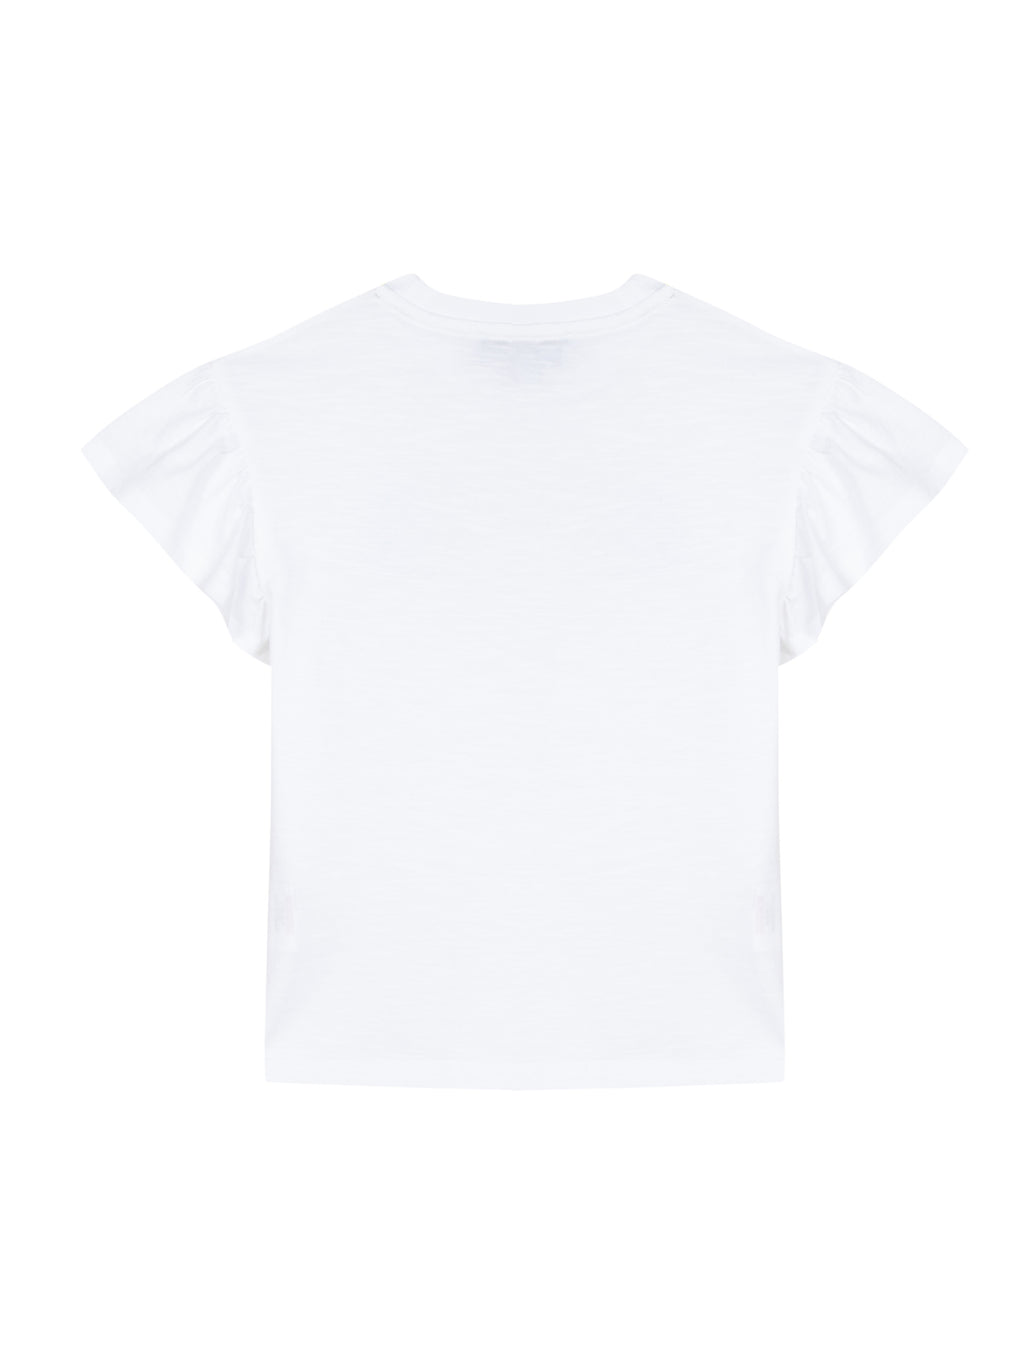 Camiseta - Jersey Blanco sonrisa